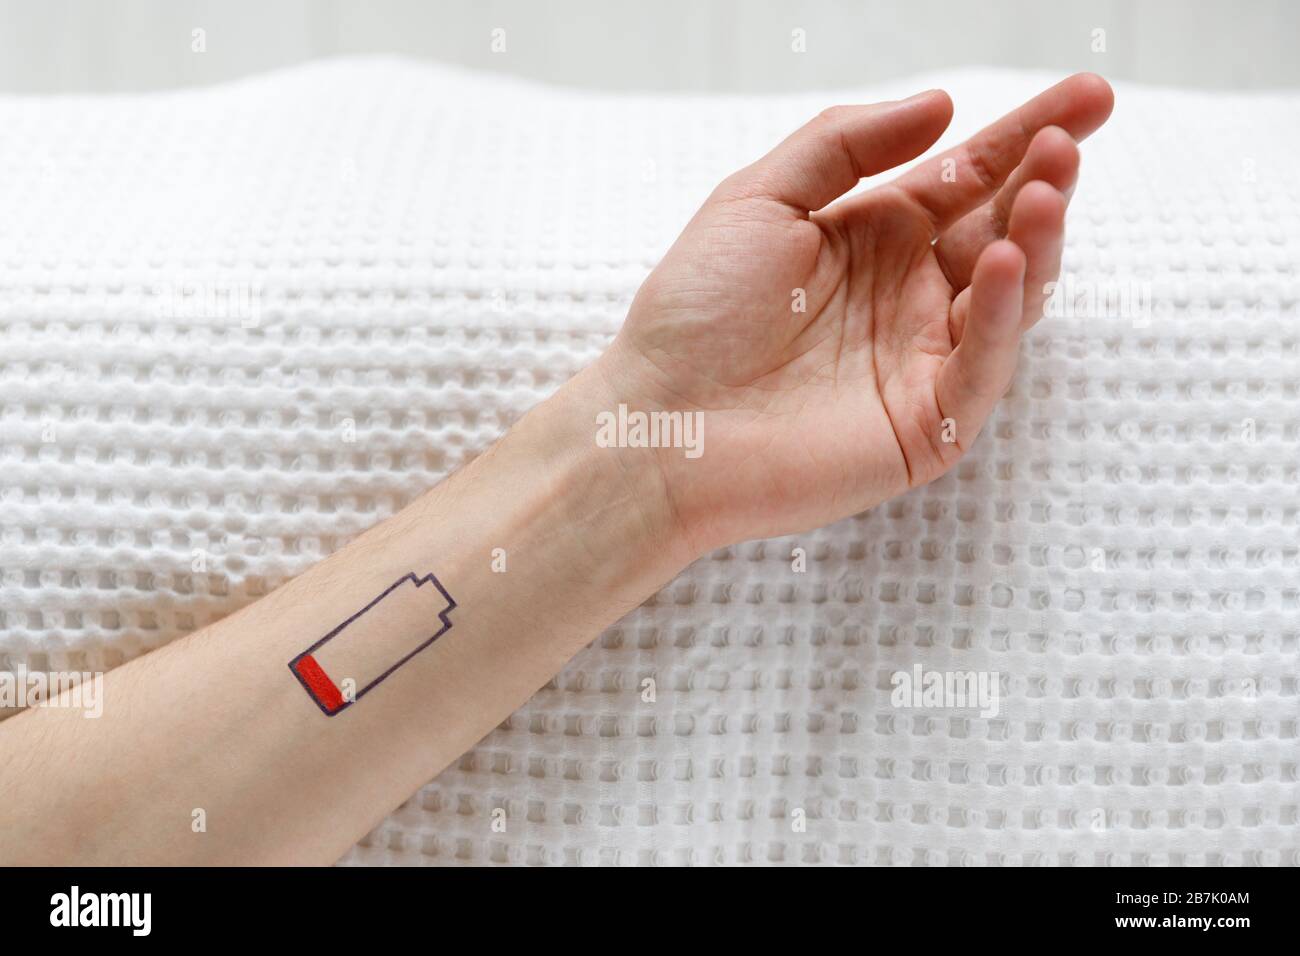 Symbol für niedrigen Batteriestand auf der menschlichen Hand. Müde Mann auf dem Bett liegend, Draufsicht. Überarbeit, erschöpft, Lebensenergie Konzept. Stockfoto